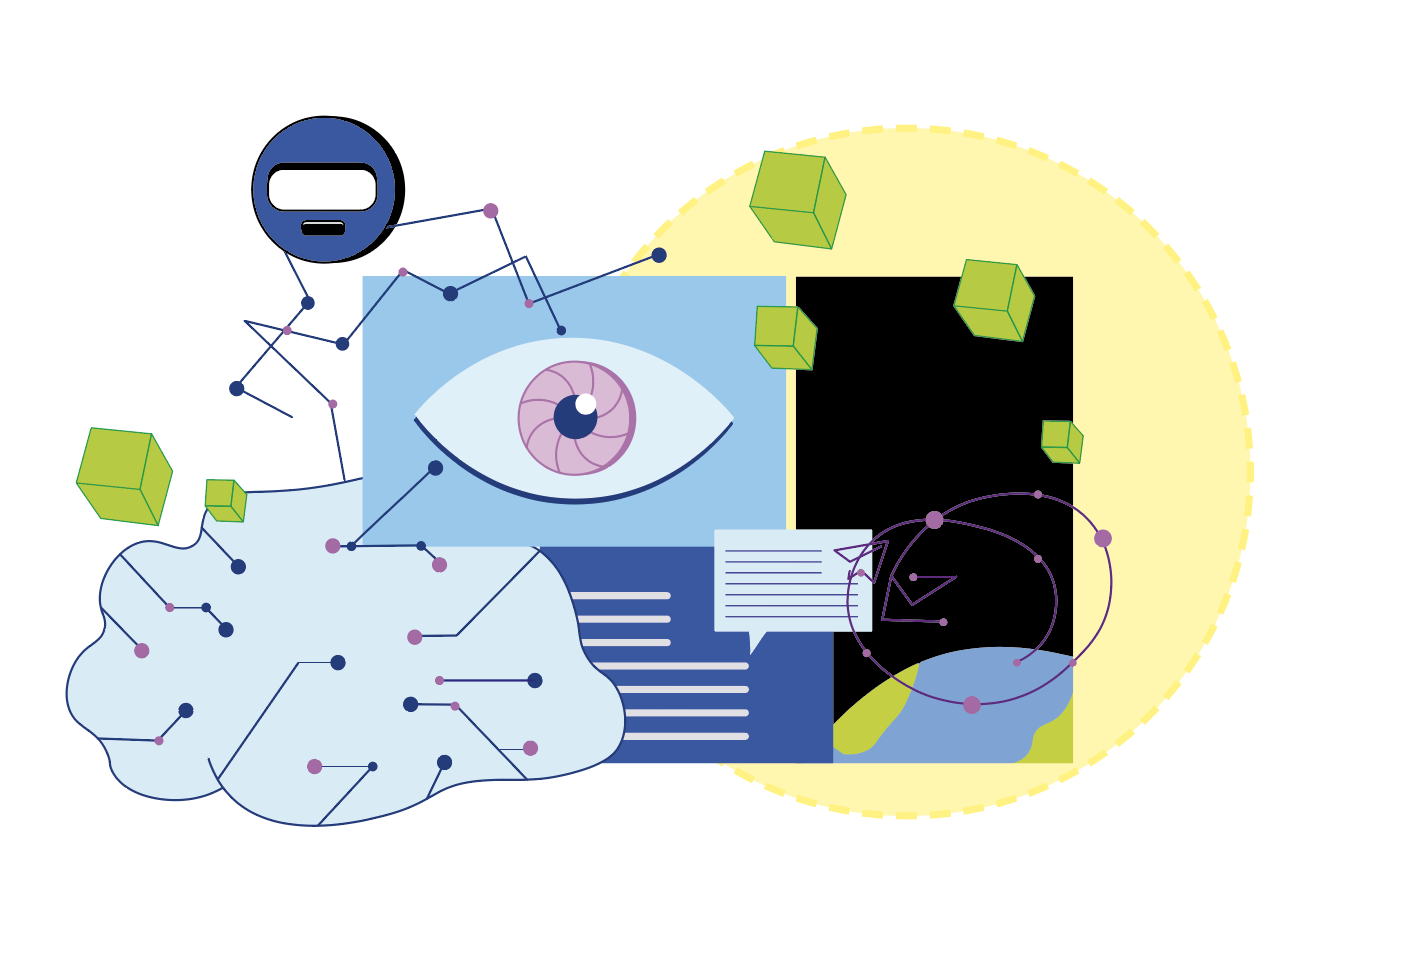 Illustration von einem Netzwerk, einem Auge, Textbausteinen und abstrakten Formen